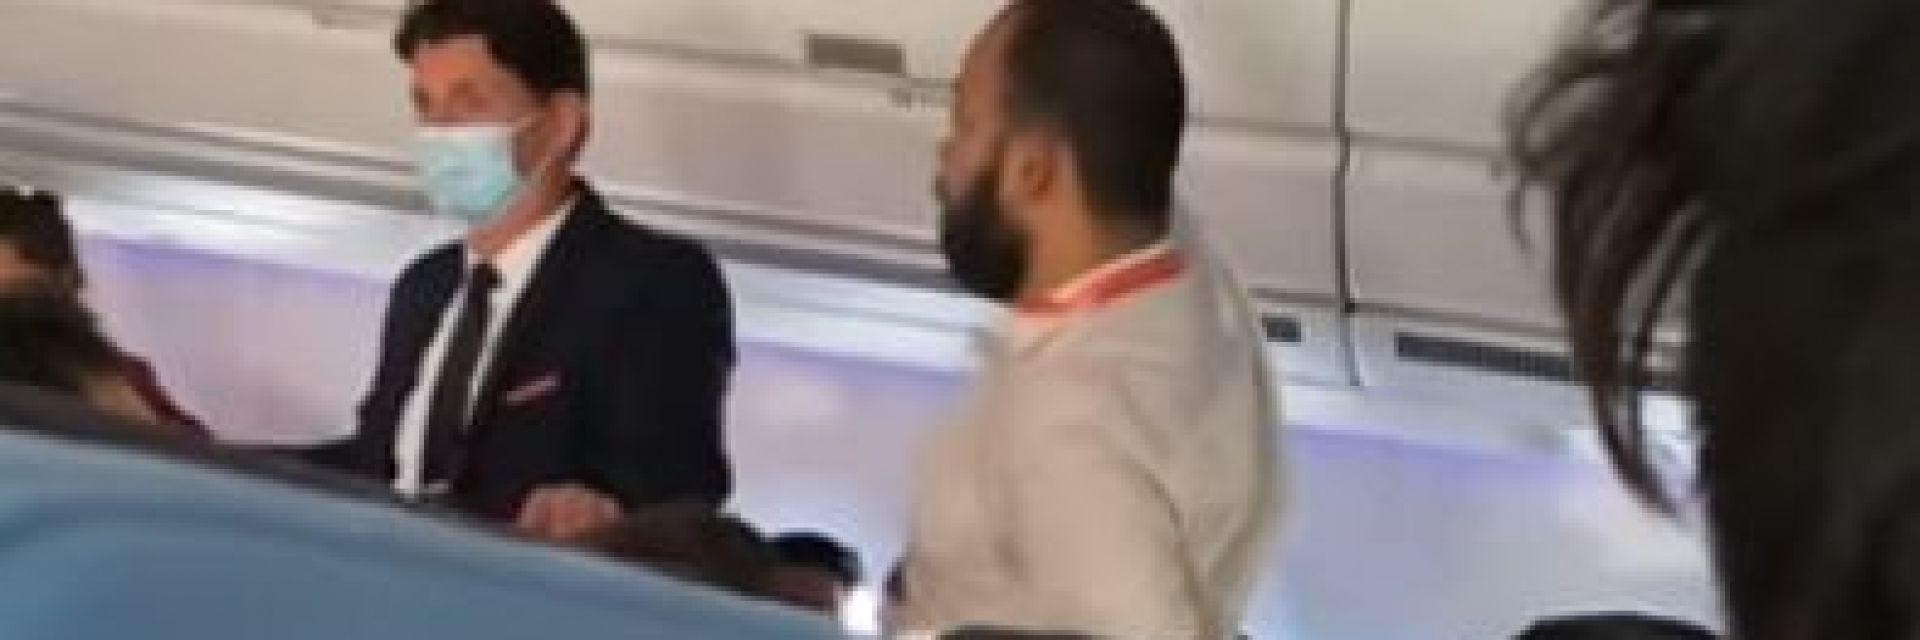 Ето какво е правил индиецът на борда на принудително кацналия самолет в София (видео)